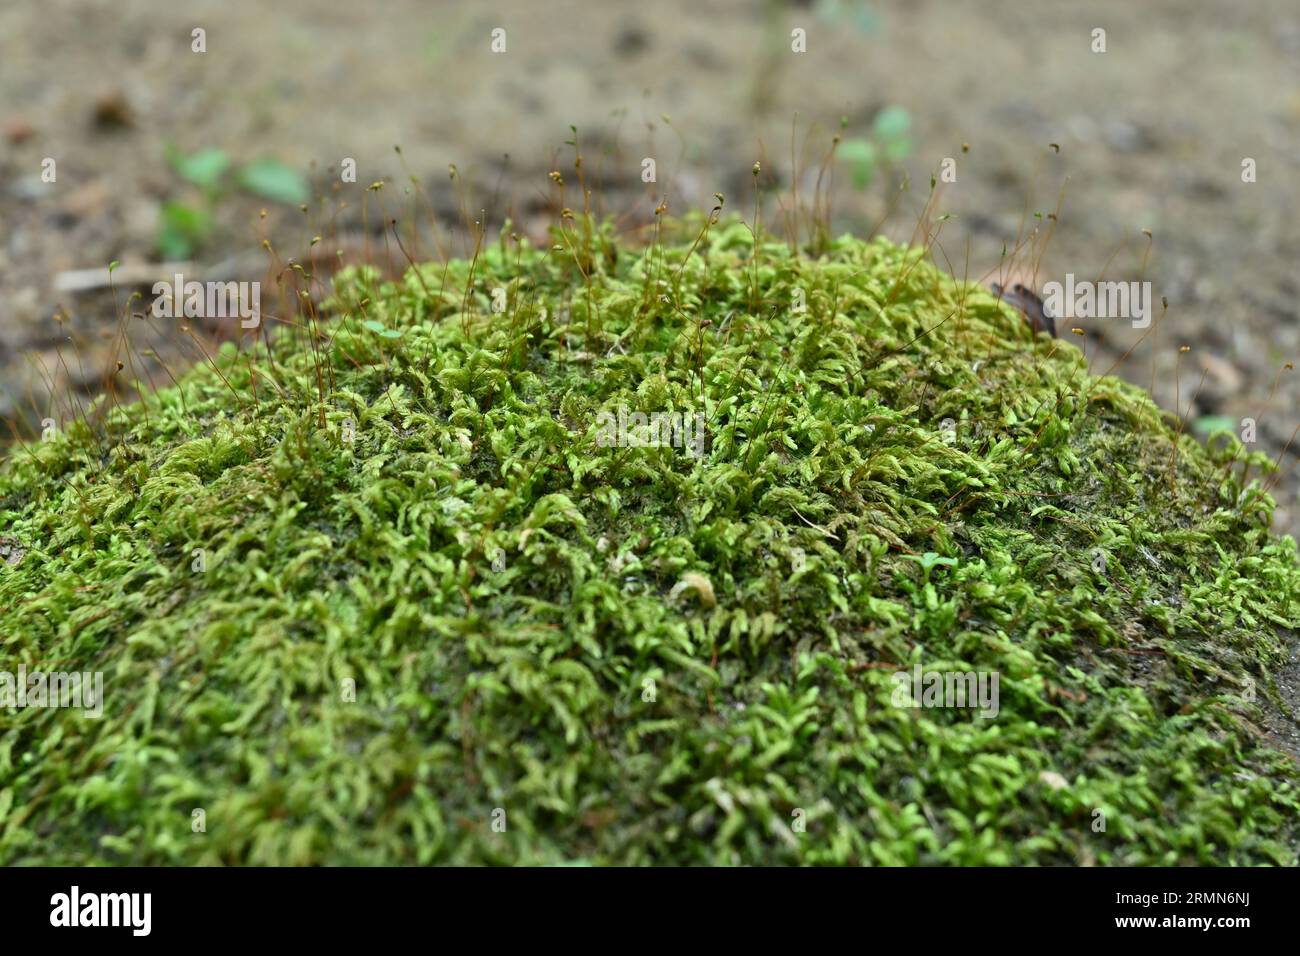 Vista dei muschi verdi che crescono sulla superficie di una roccia con le spore di muschio Foto Stock